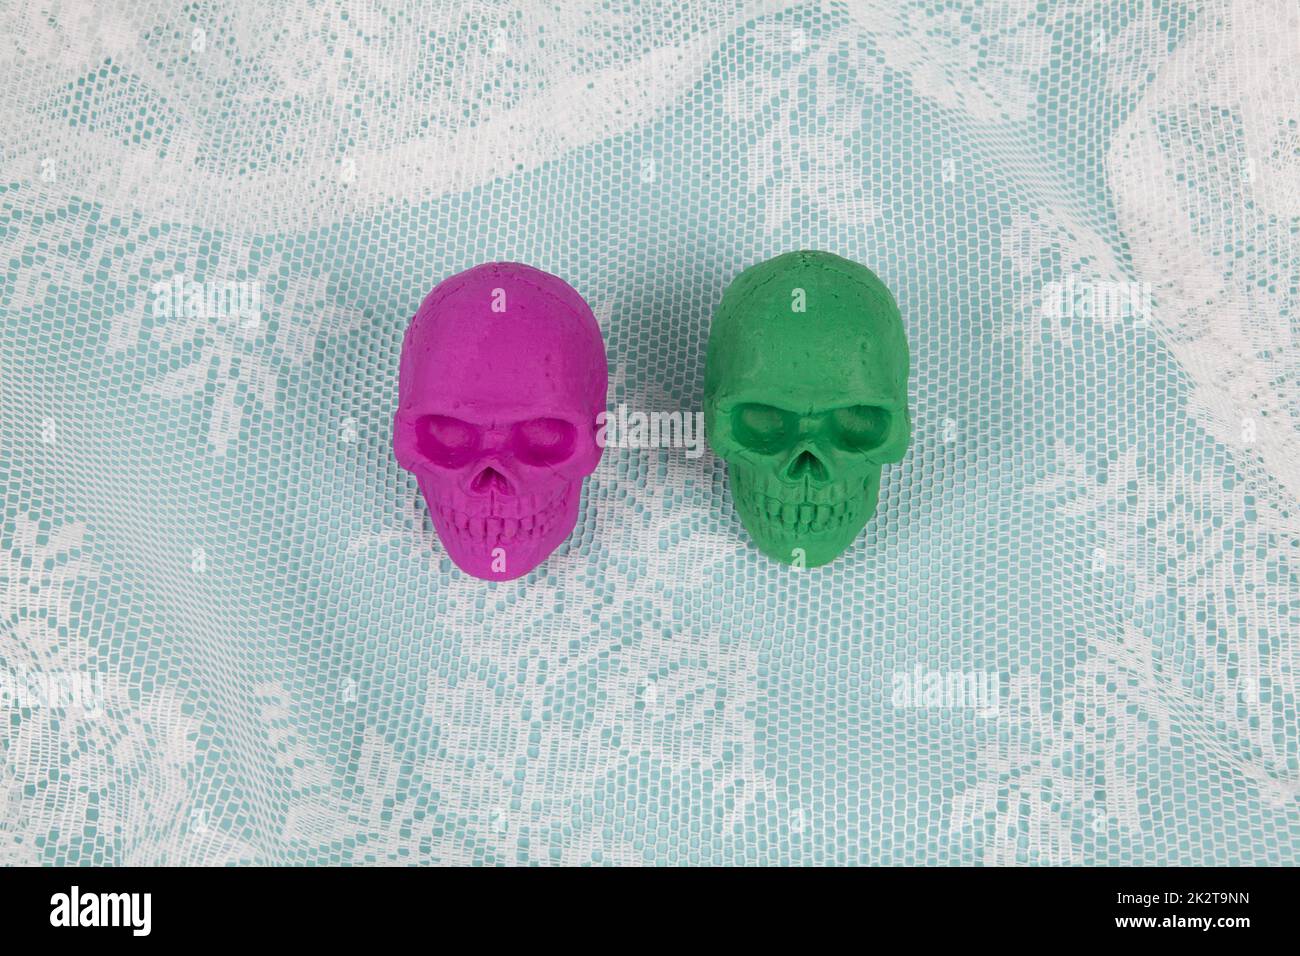 Pinkfarbener und grüner Spielzeugschädel aus Kunststoff Stockfoto